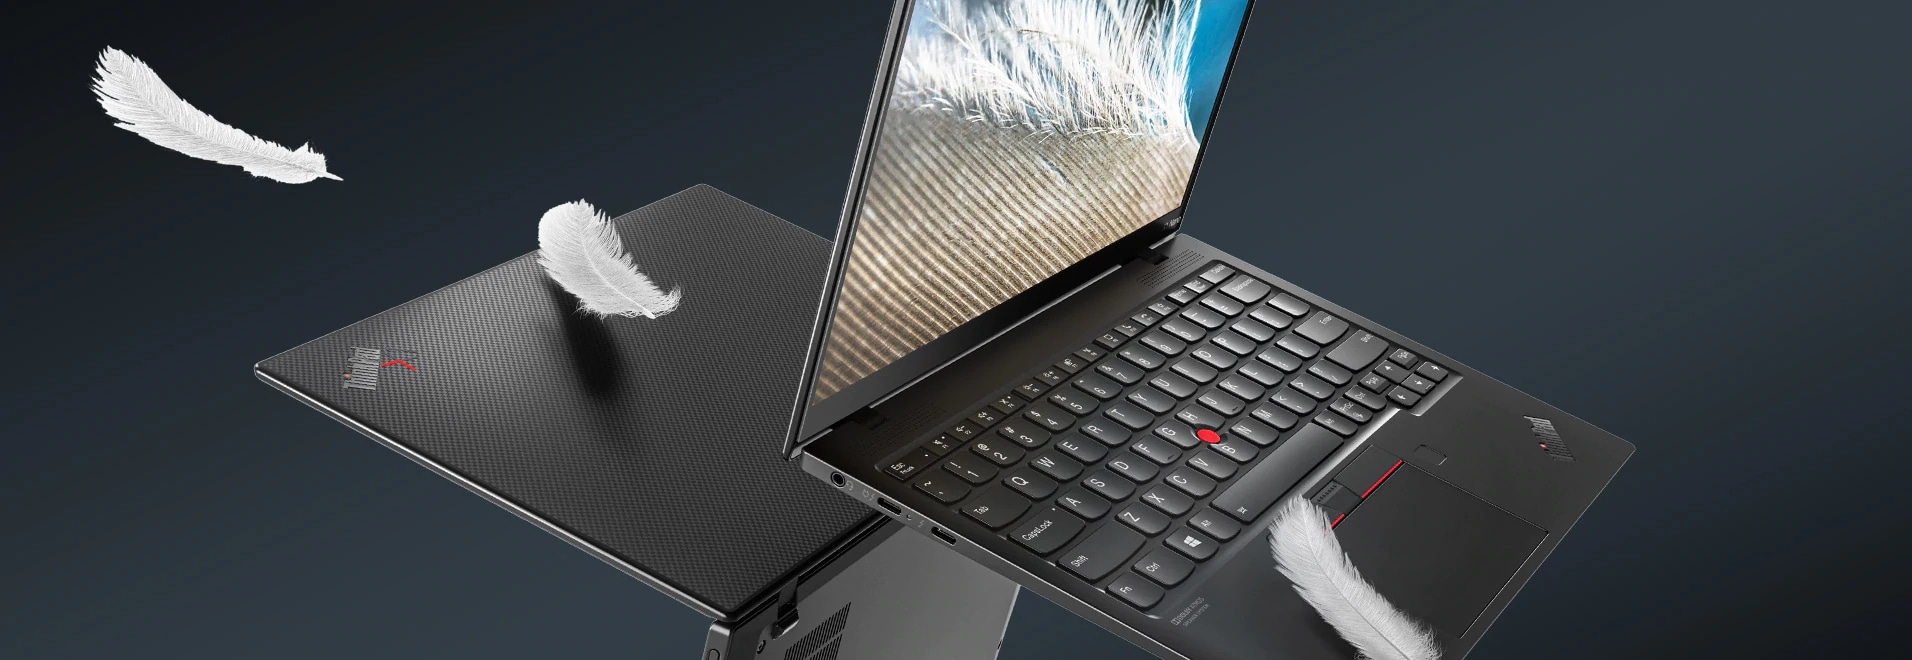 Lenovo ThinkPad X1 - Laptop cao cấp và gọn nhẹ